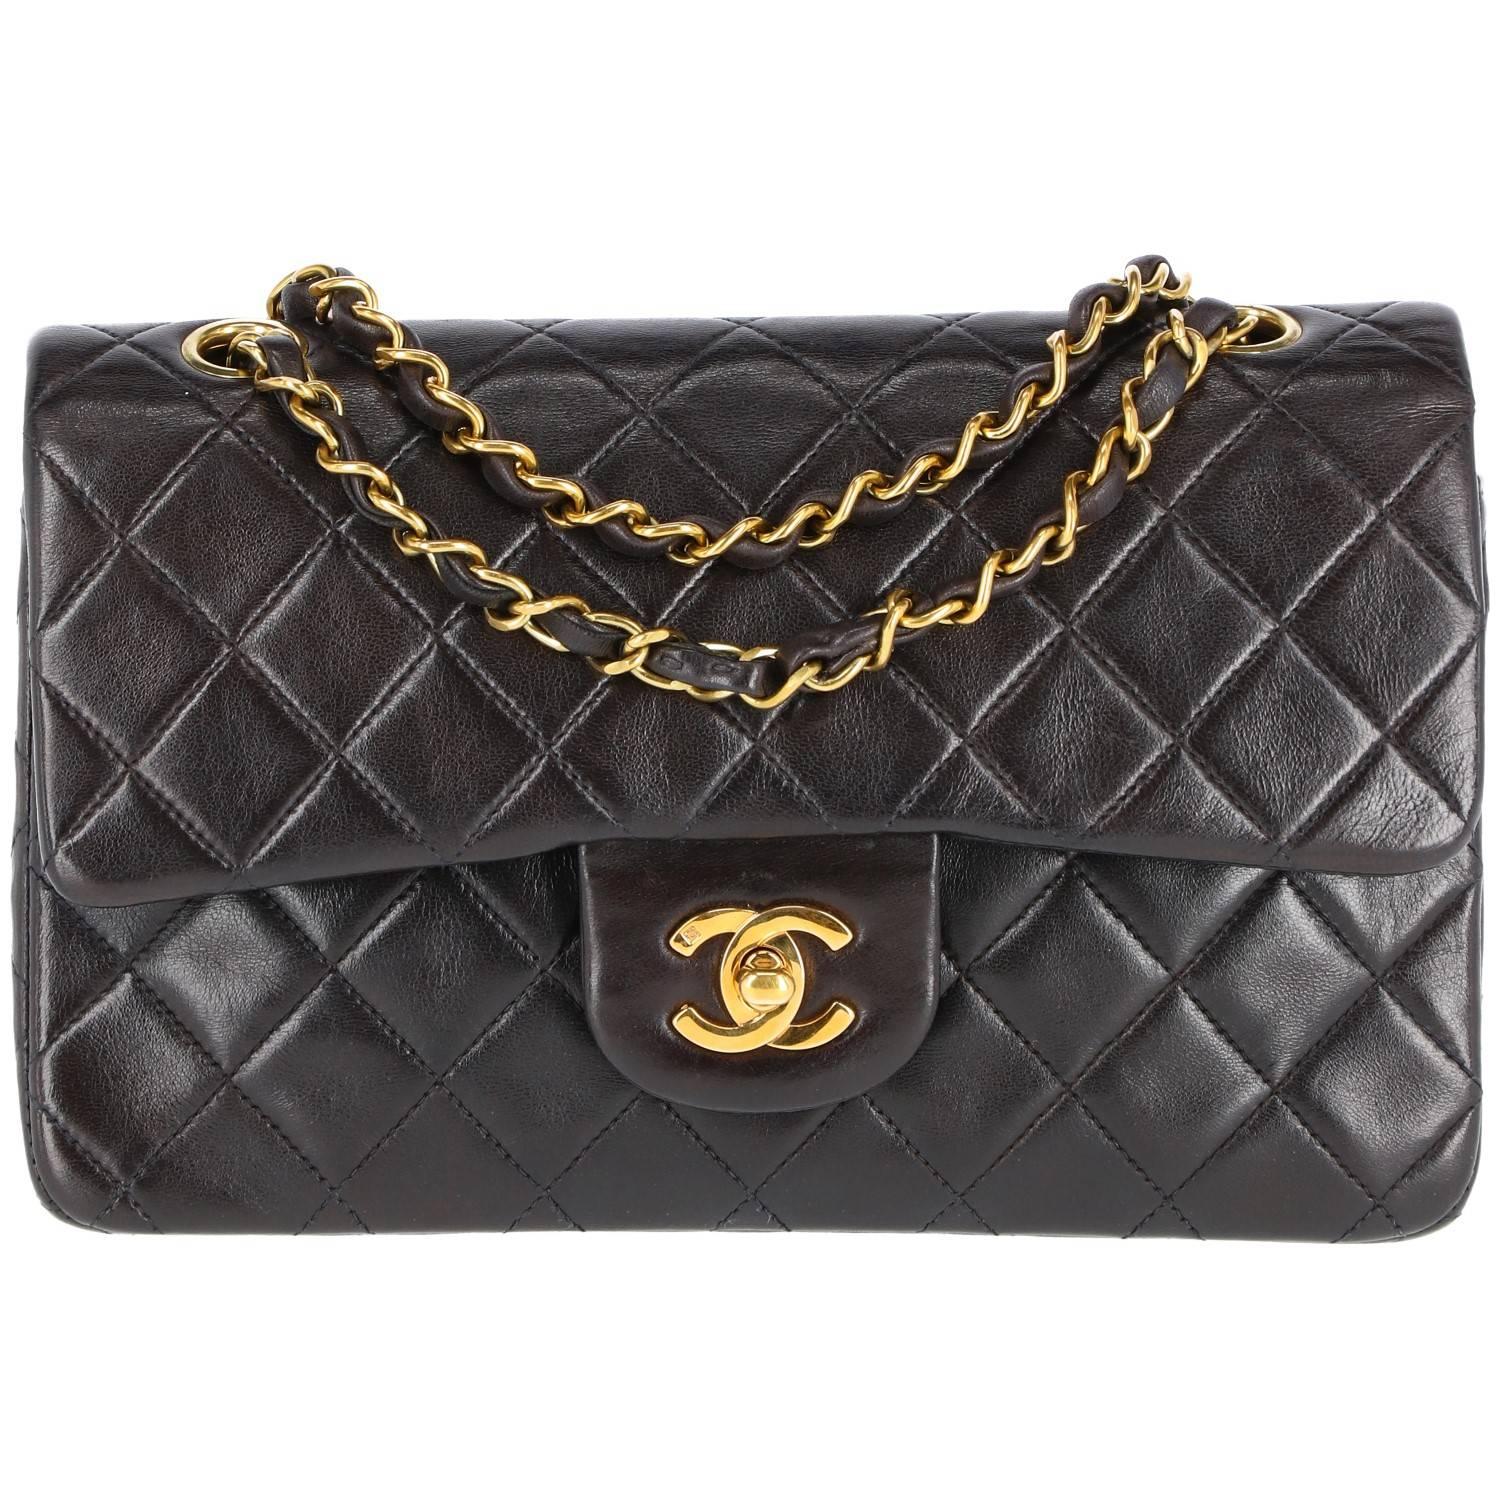 1990s Chanel Vintage Classic 23 cm Bag